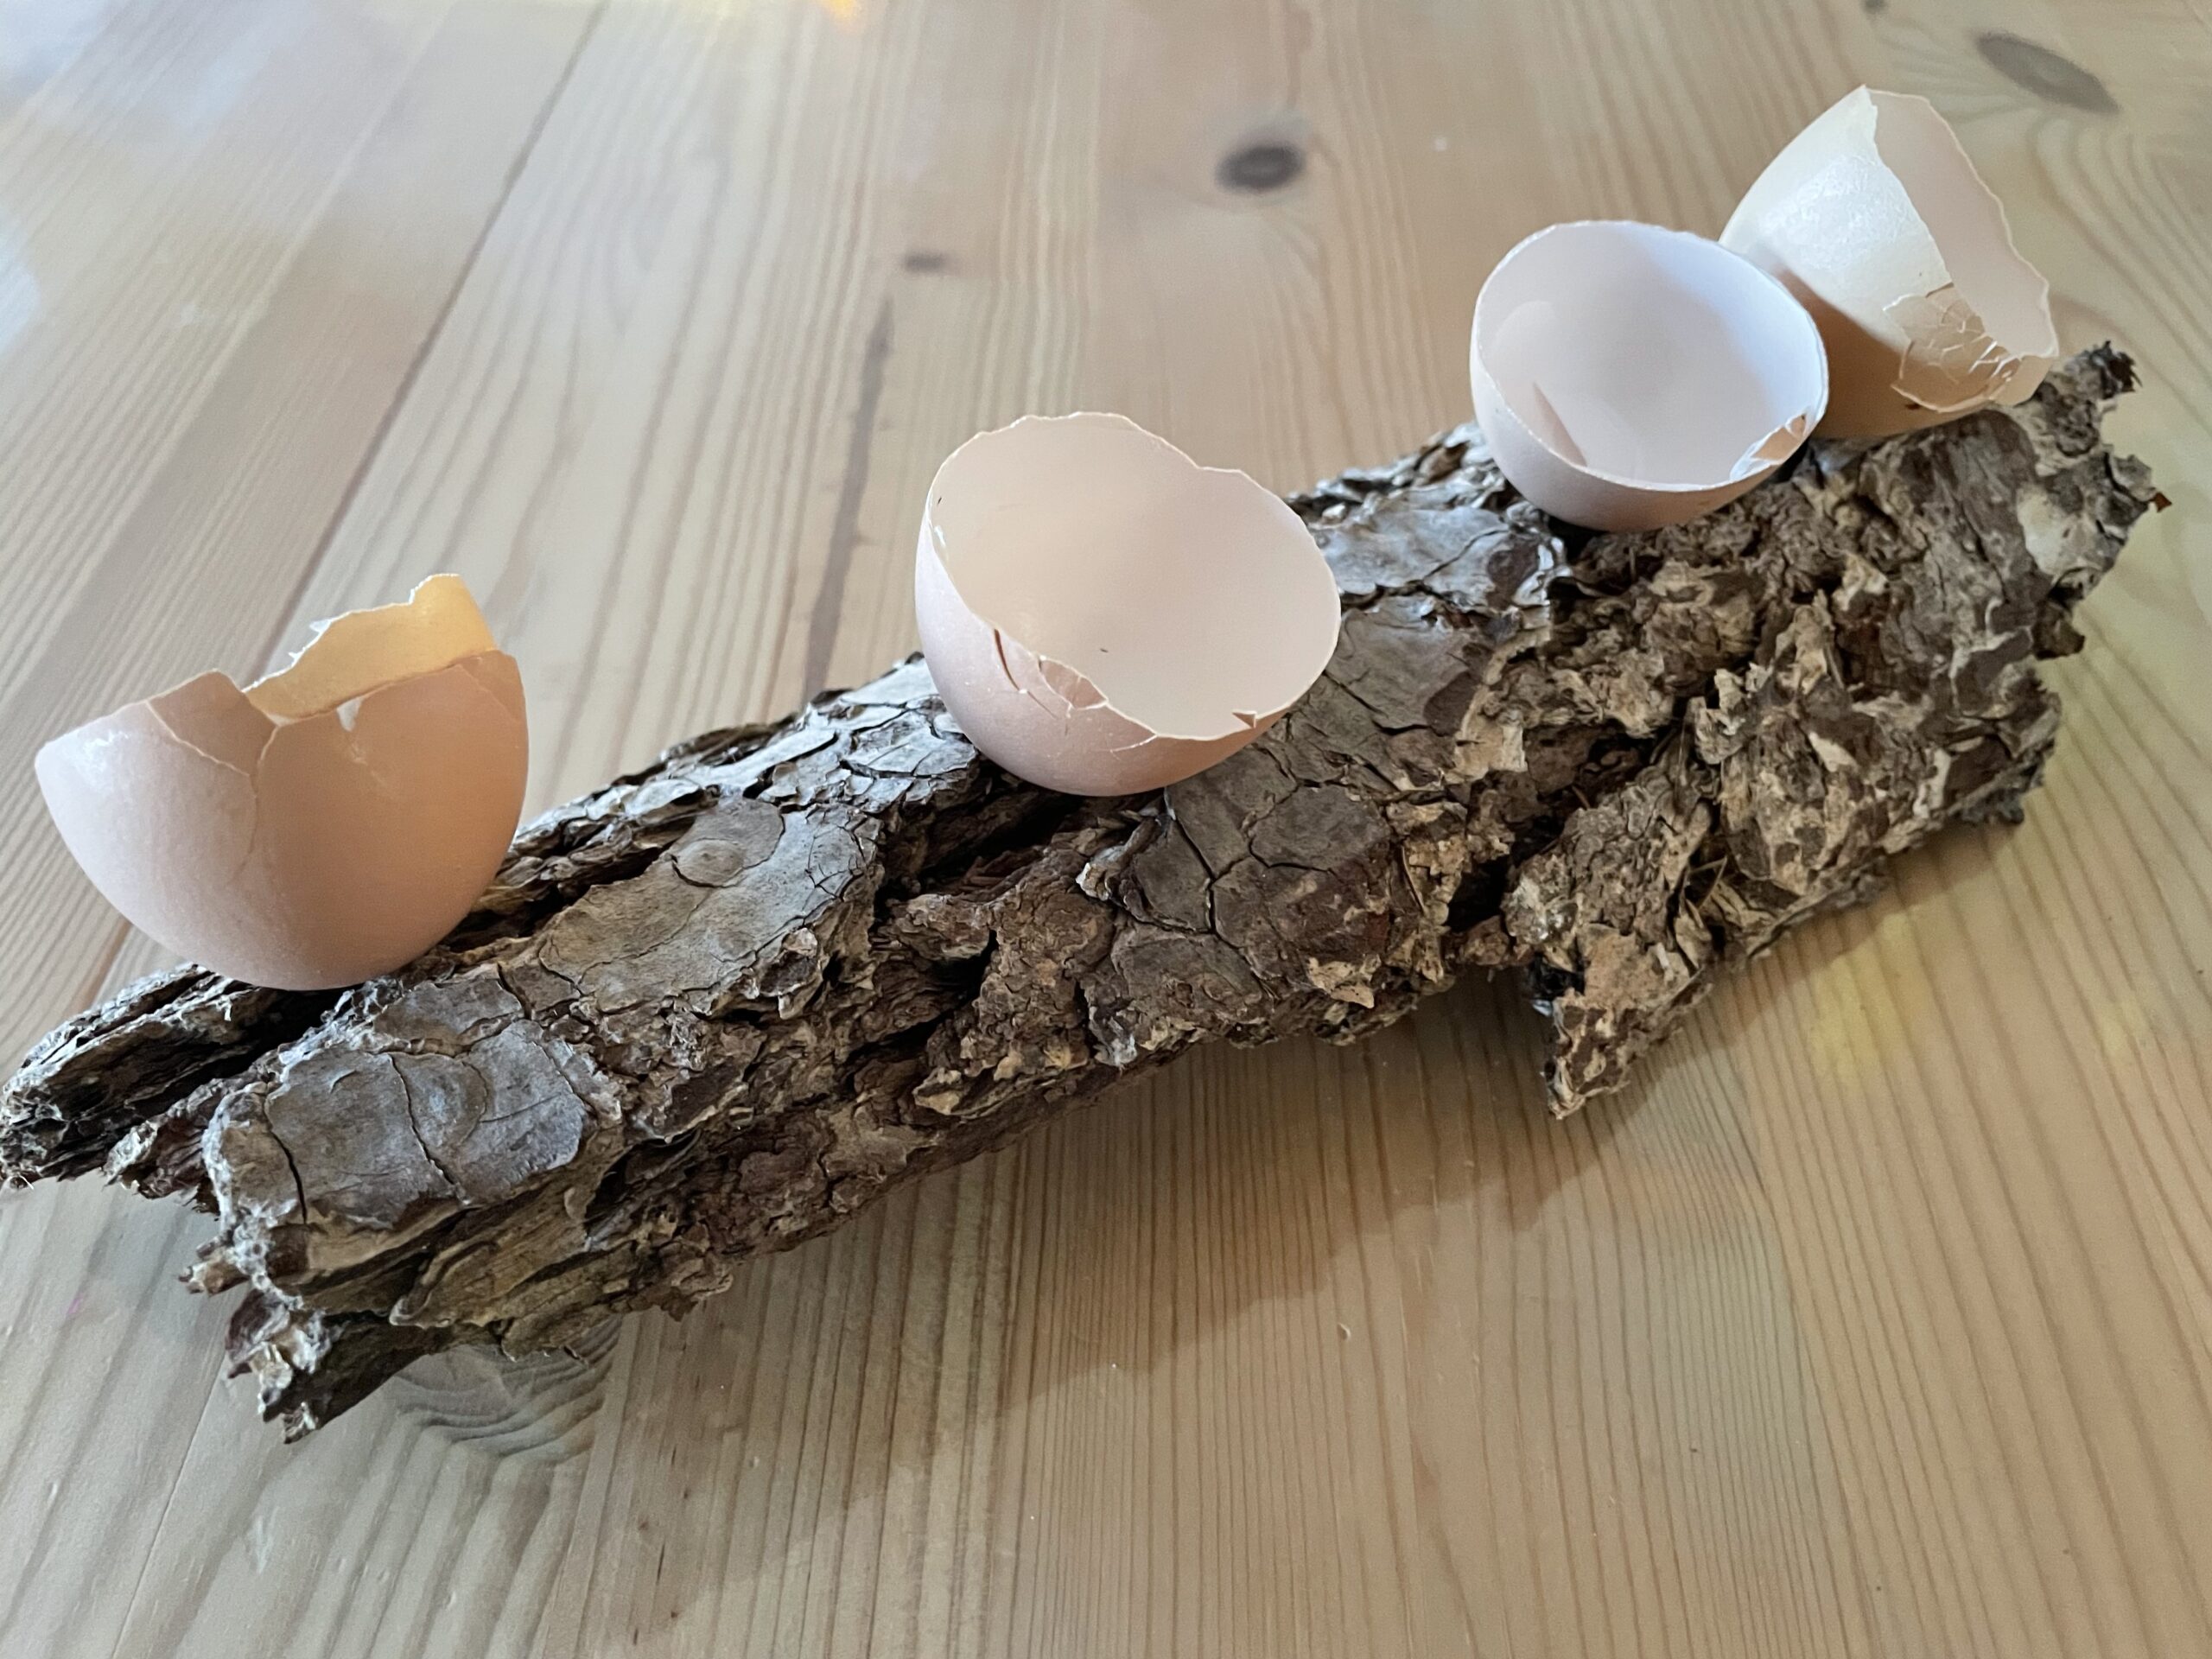 Bild zum Schritt 4 für das Bastel- und DIY-Abenteuer für Kinder: 'Ordnet jetzt die Eierschalen auf der Baumrinde an.'